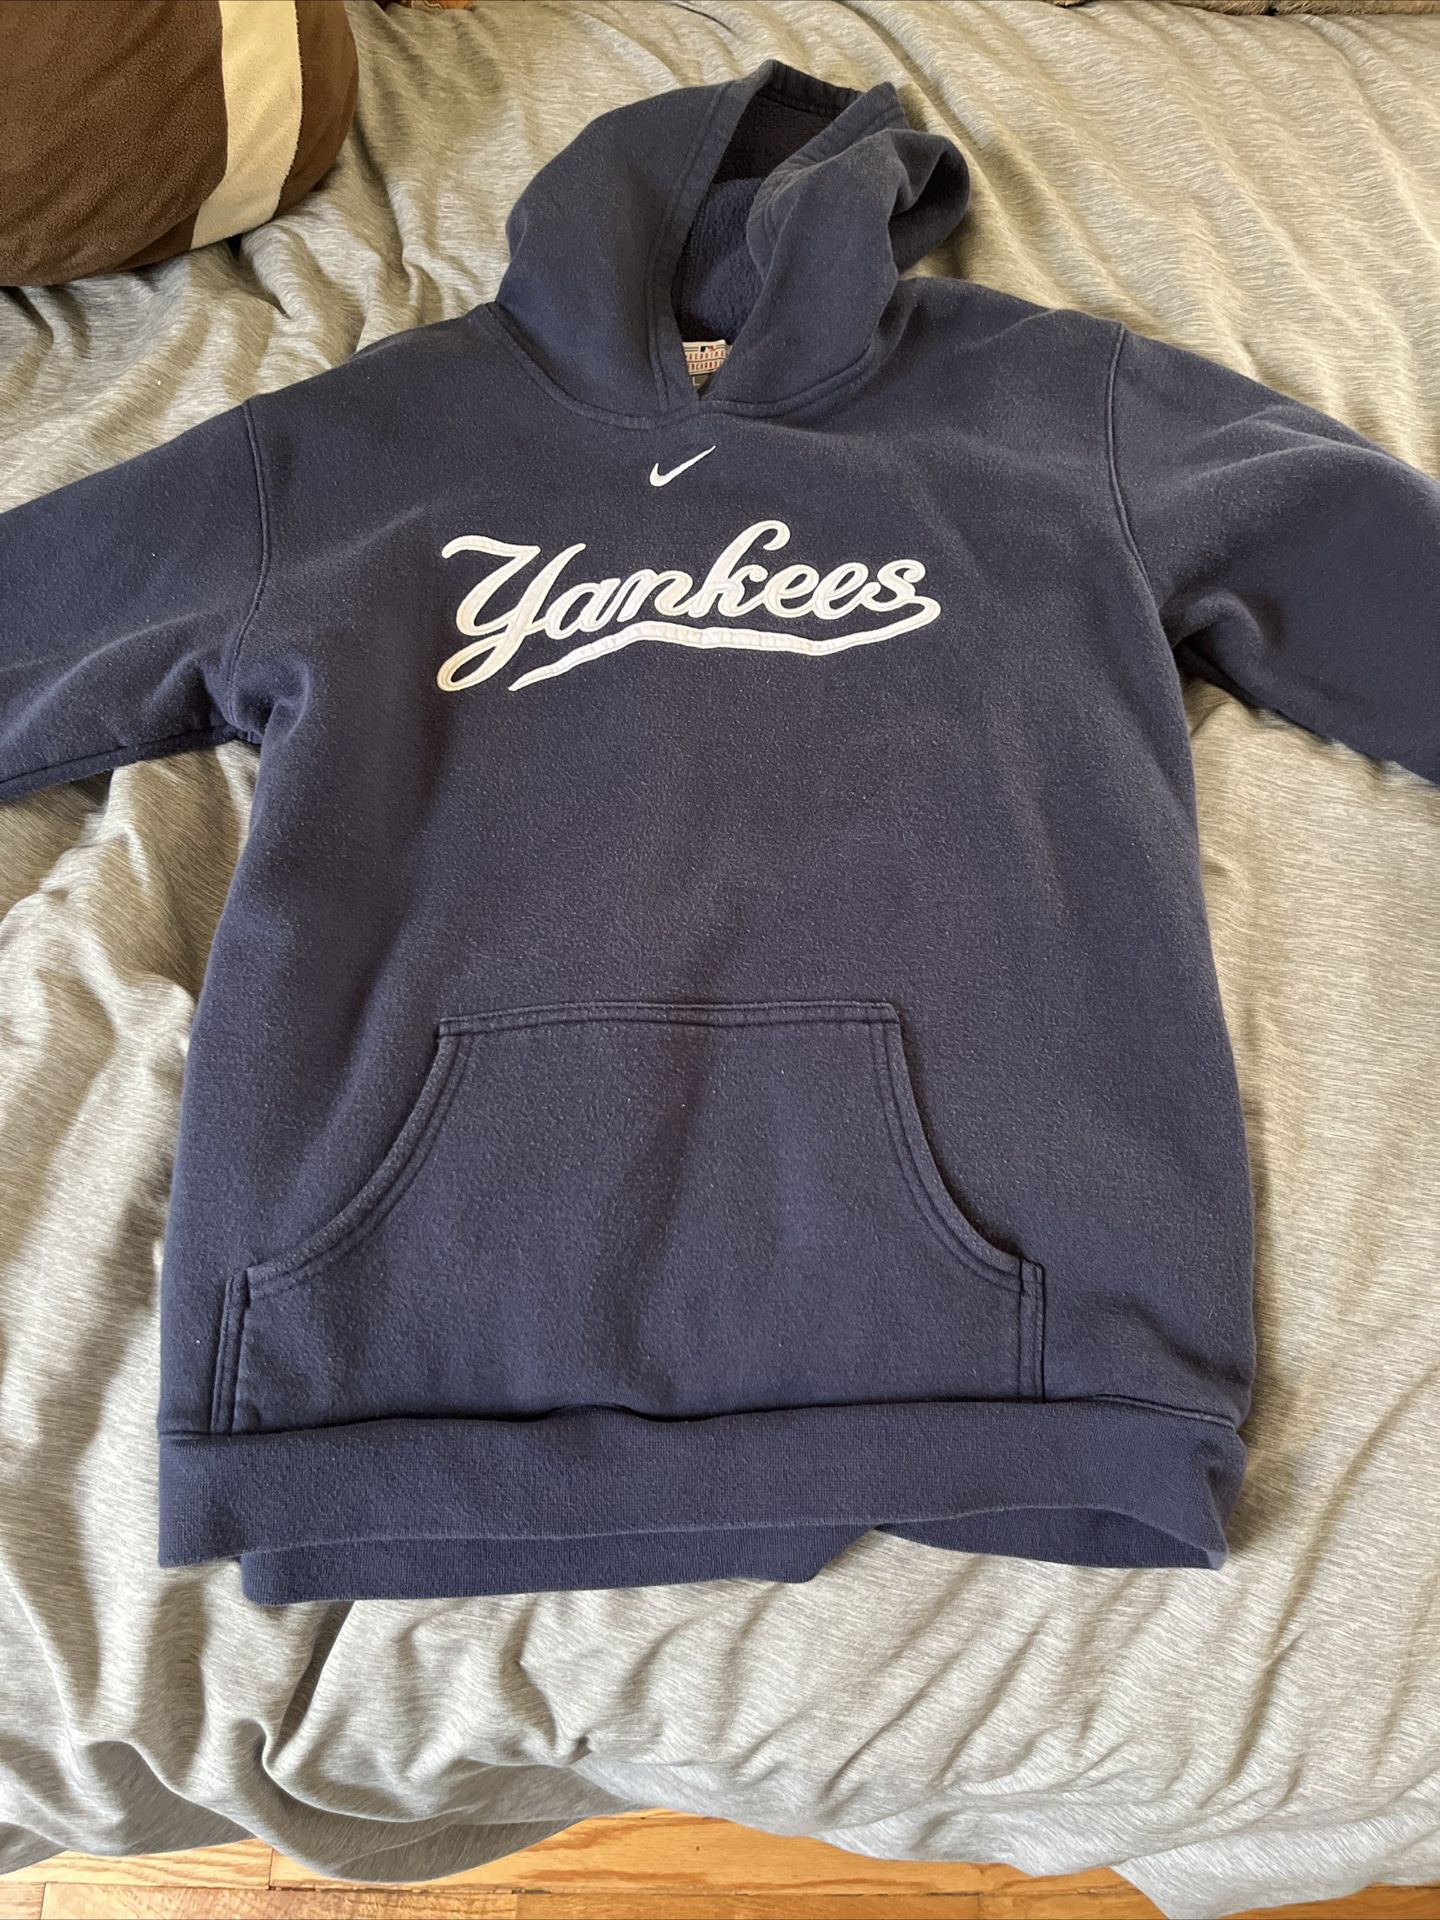 Nike Yankees Hoodie for Sale in Loehmanns Plz, NY - OfferUp